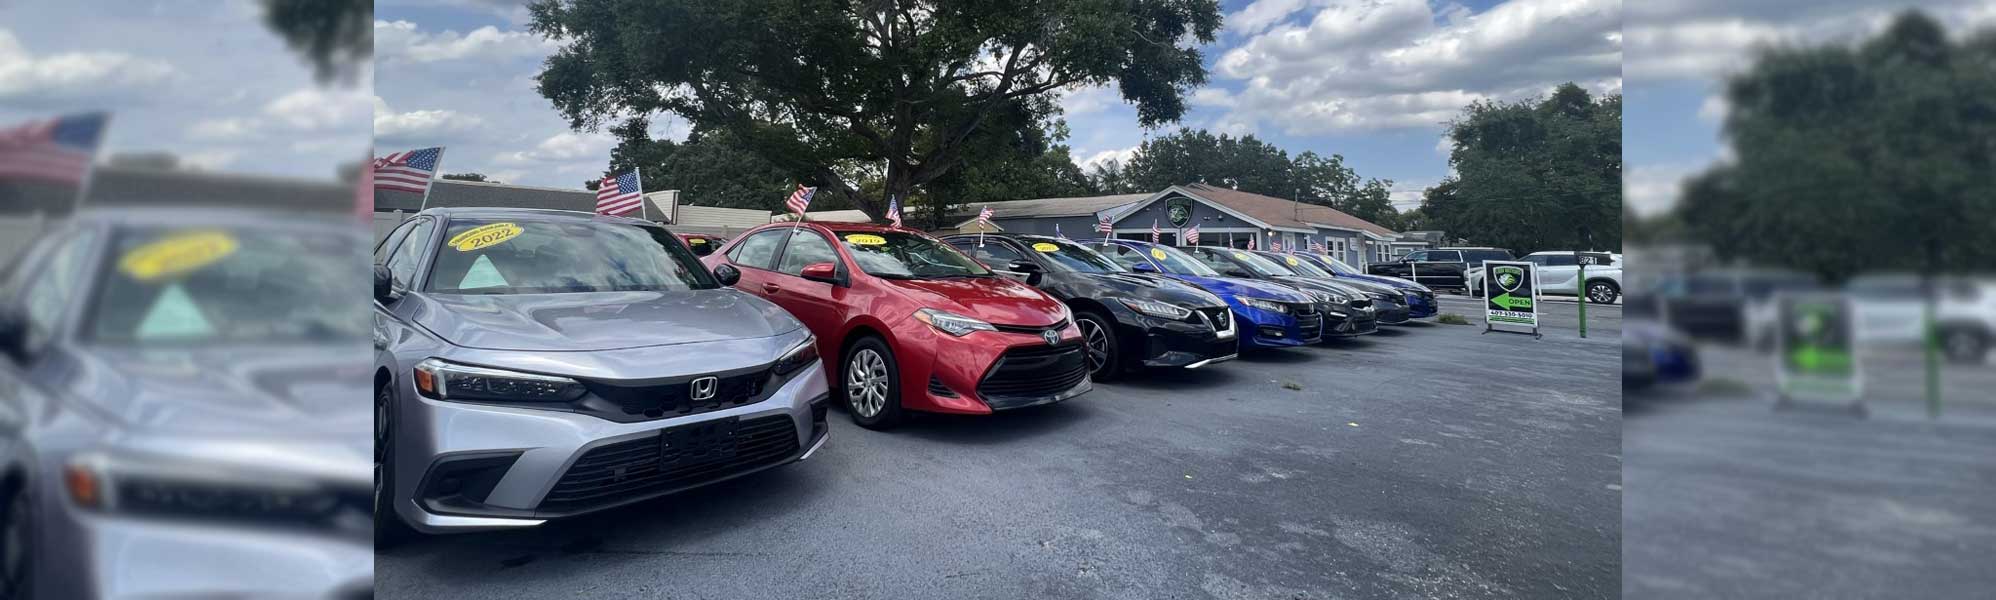 High Quality Car Inventory in Orlando, FL